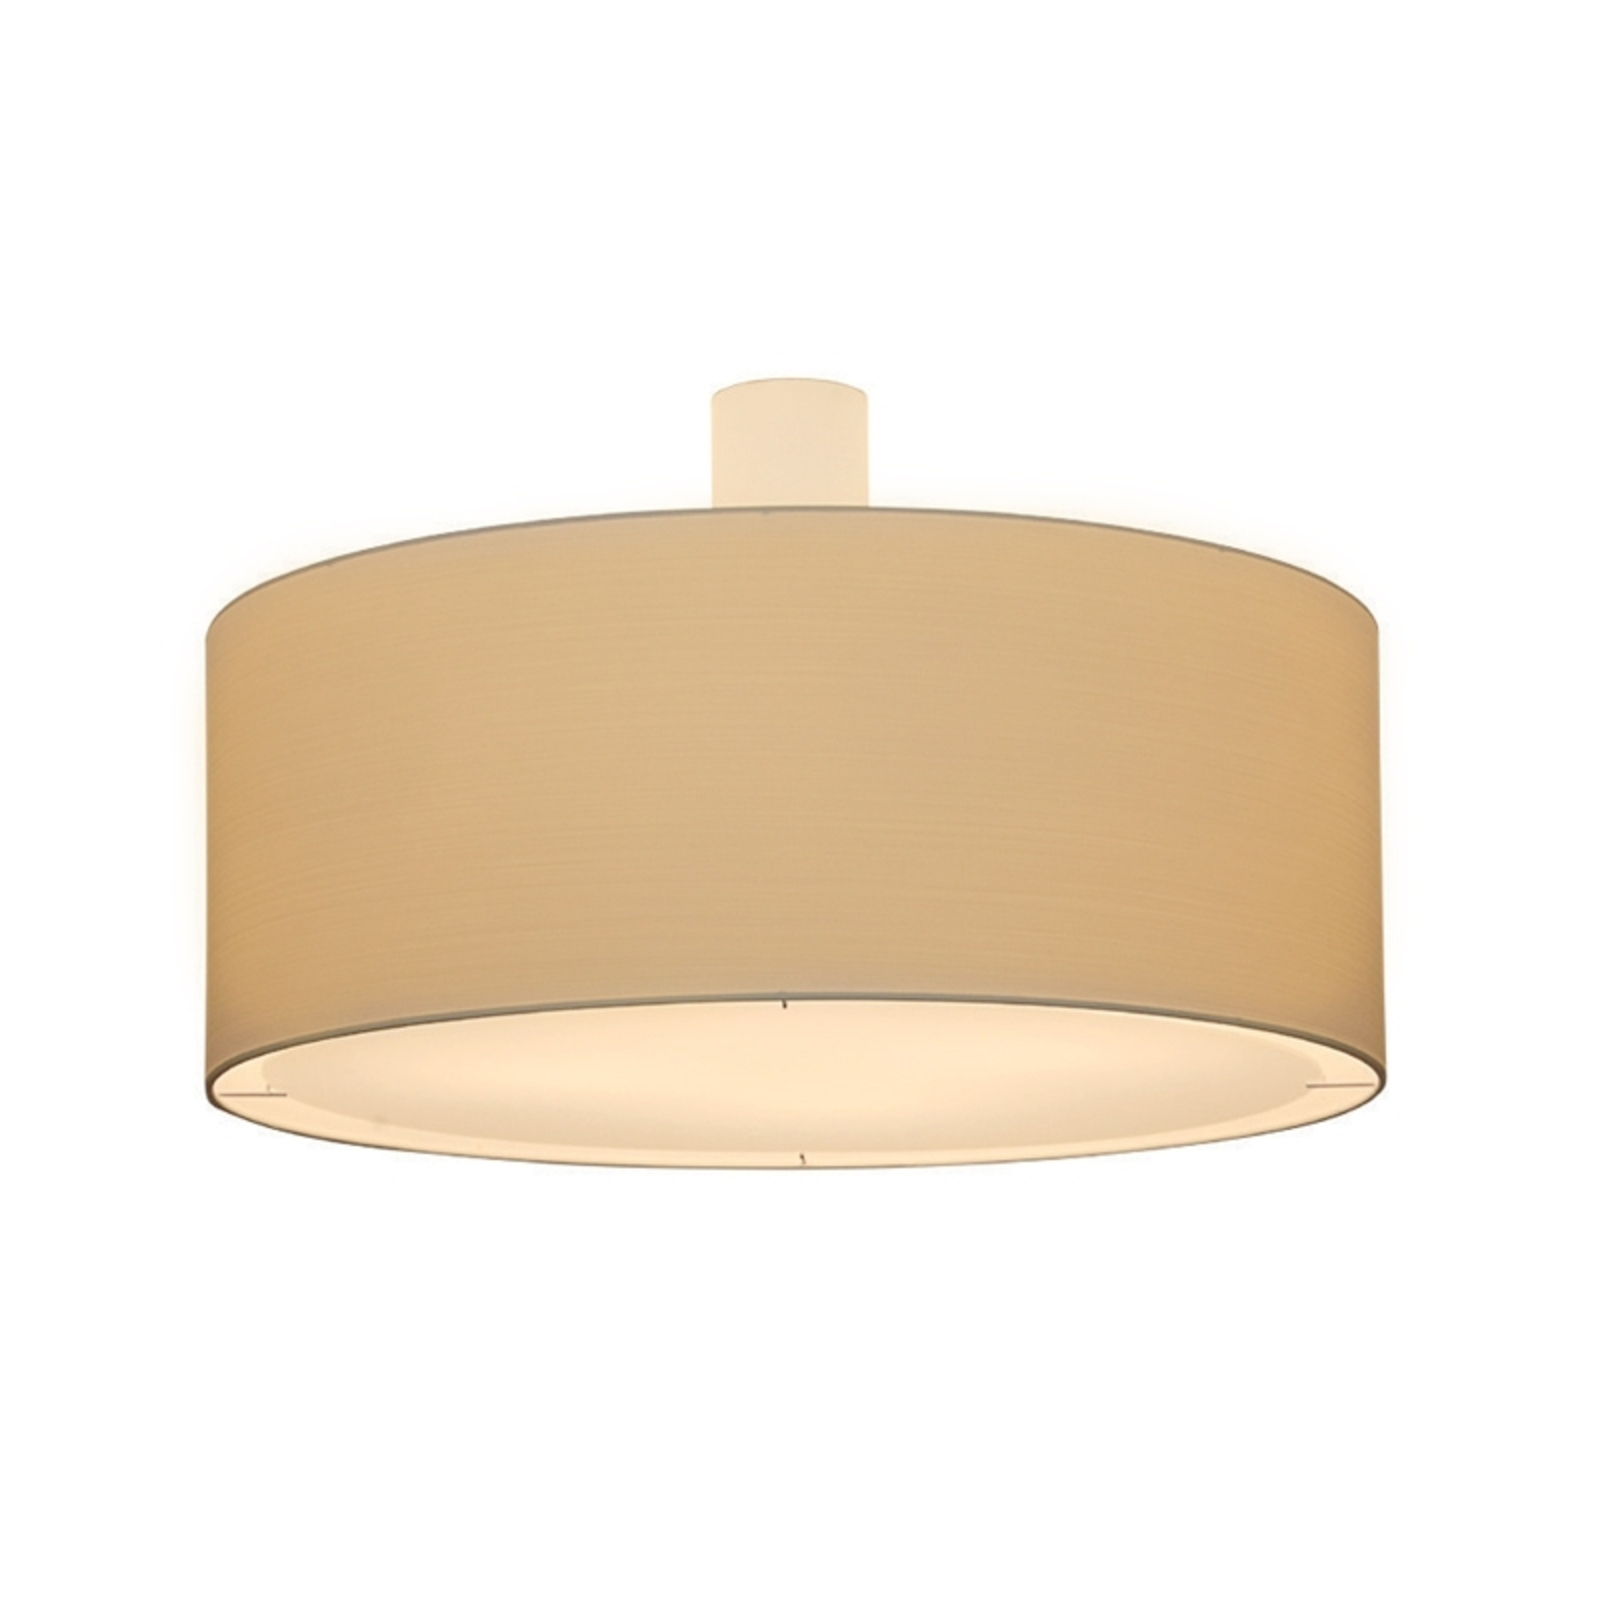 Plafondlamp LIVING ELEGANT, diameter 60 cm, crème